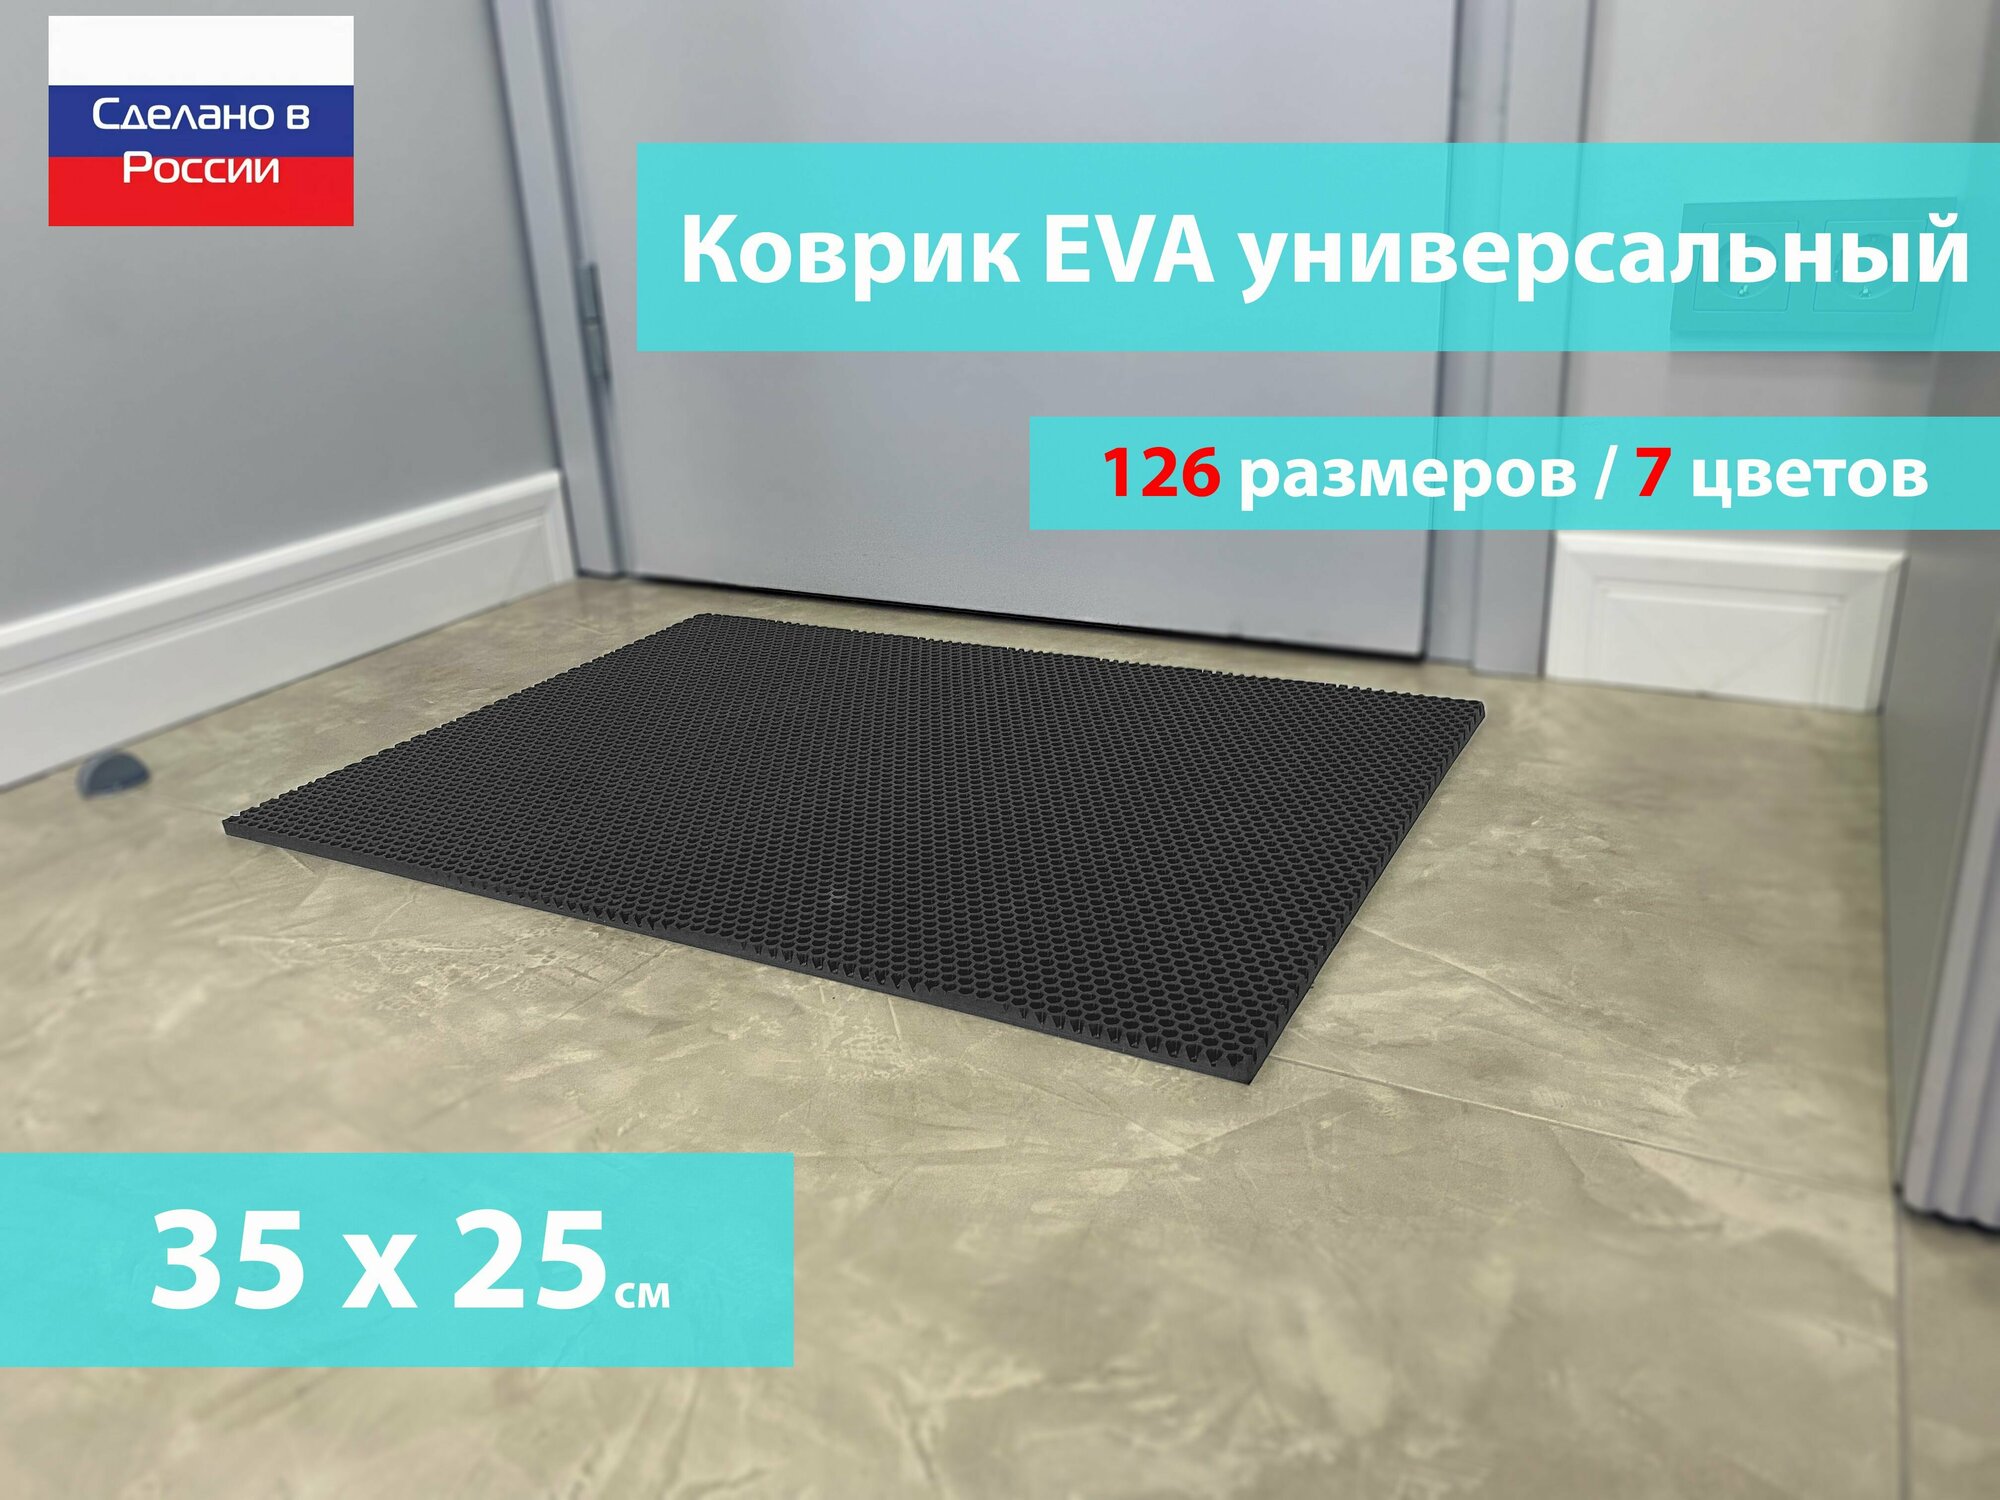 Коврик придверный EVA (ЕВА) в прихожую для обуви / Ковер ЭВА на пол перед дверью/ серый / размер 35 х 25 см